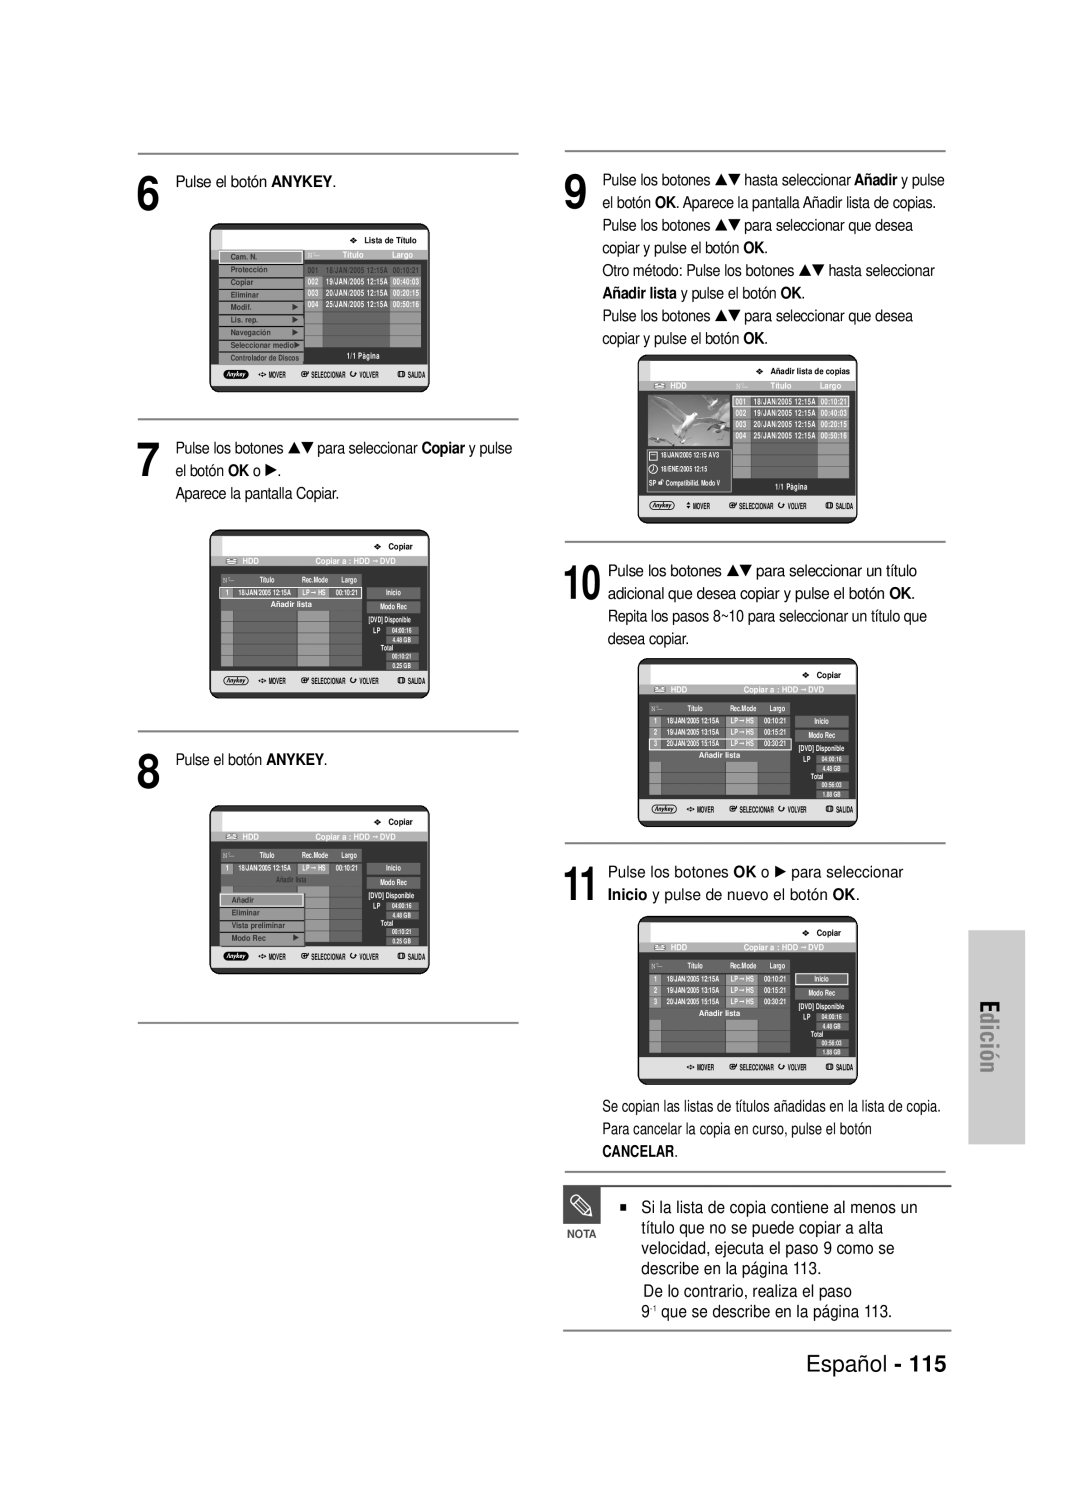 Samsung DVD-HR725/XEE manual Edición, Español, título que no se puede copiar a alta, velocidad, ejecuta el paso 9 como se 